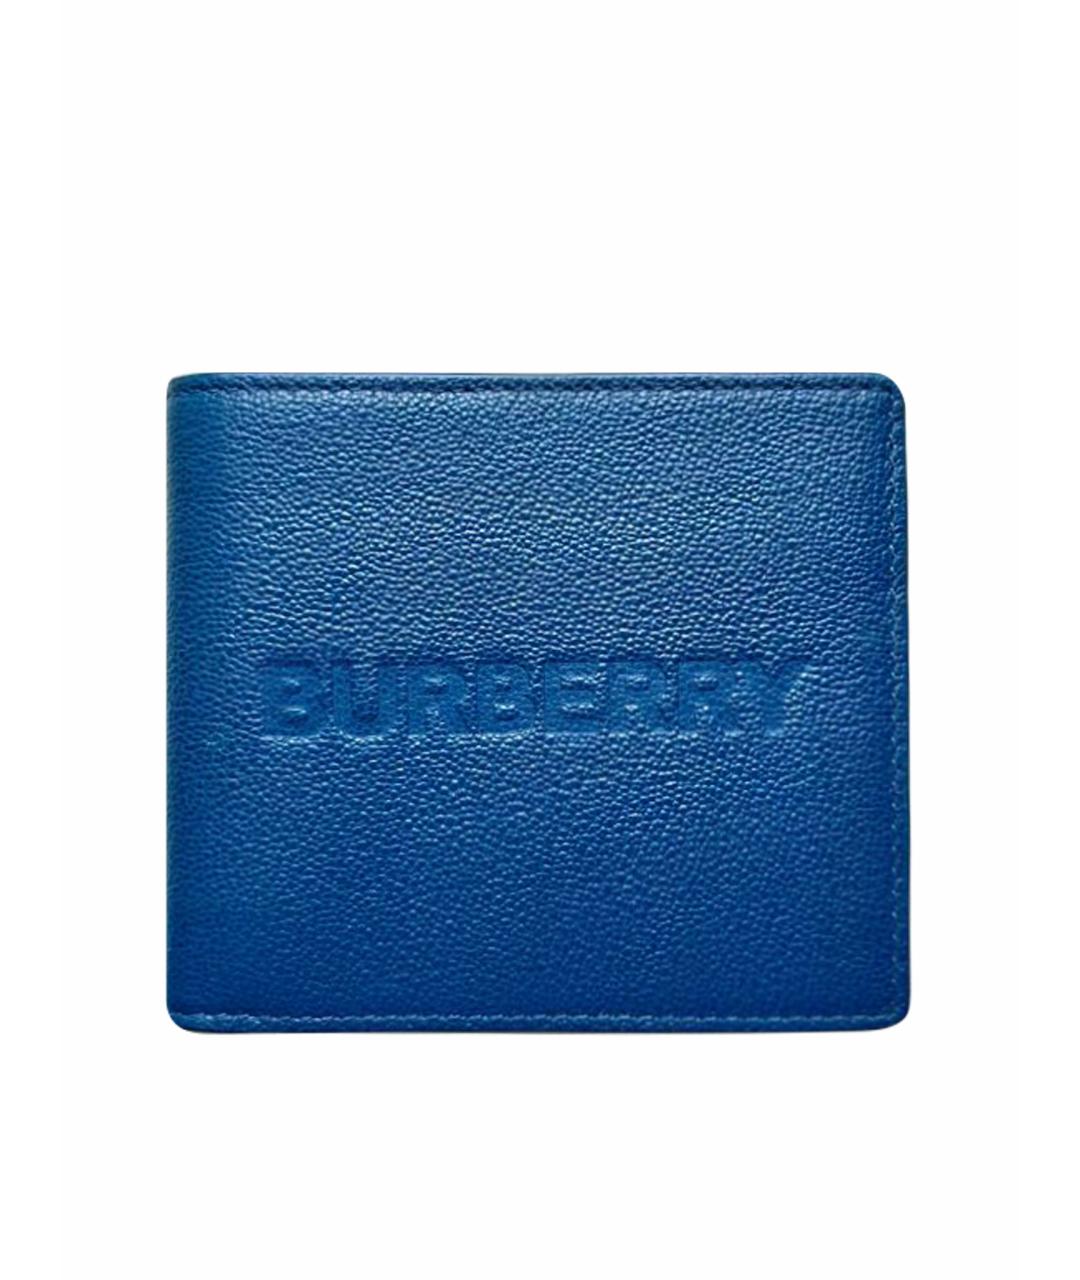 BURBERRY Синий кошелек из искусственной кожи, фото 1